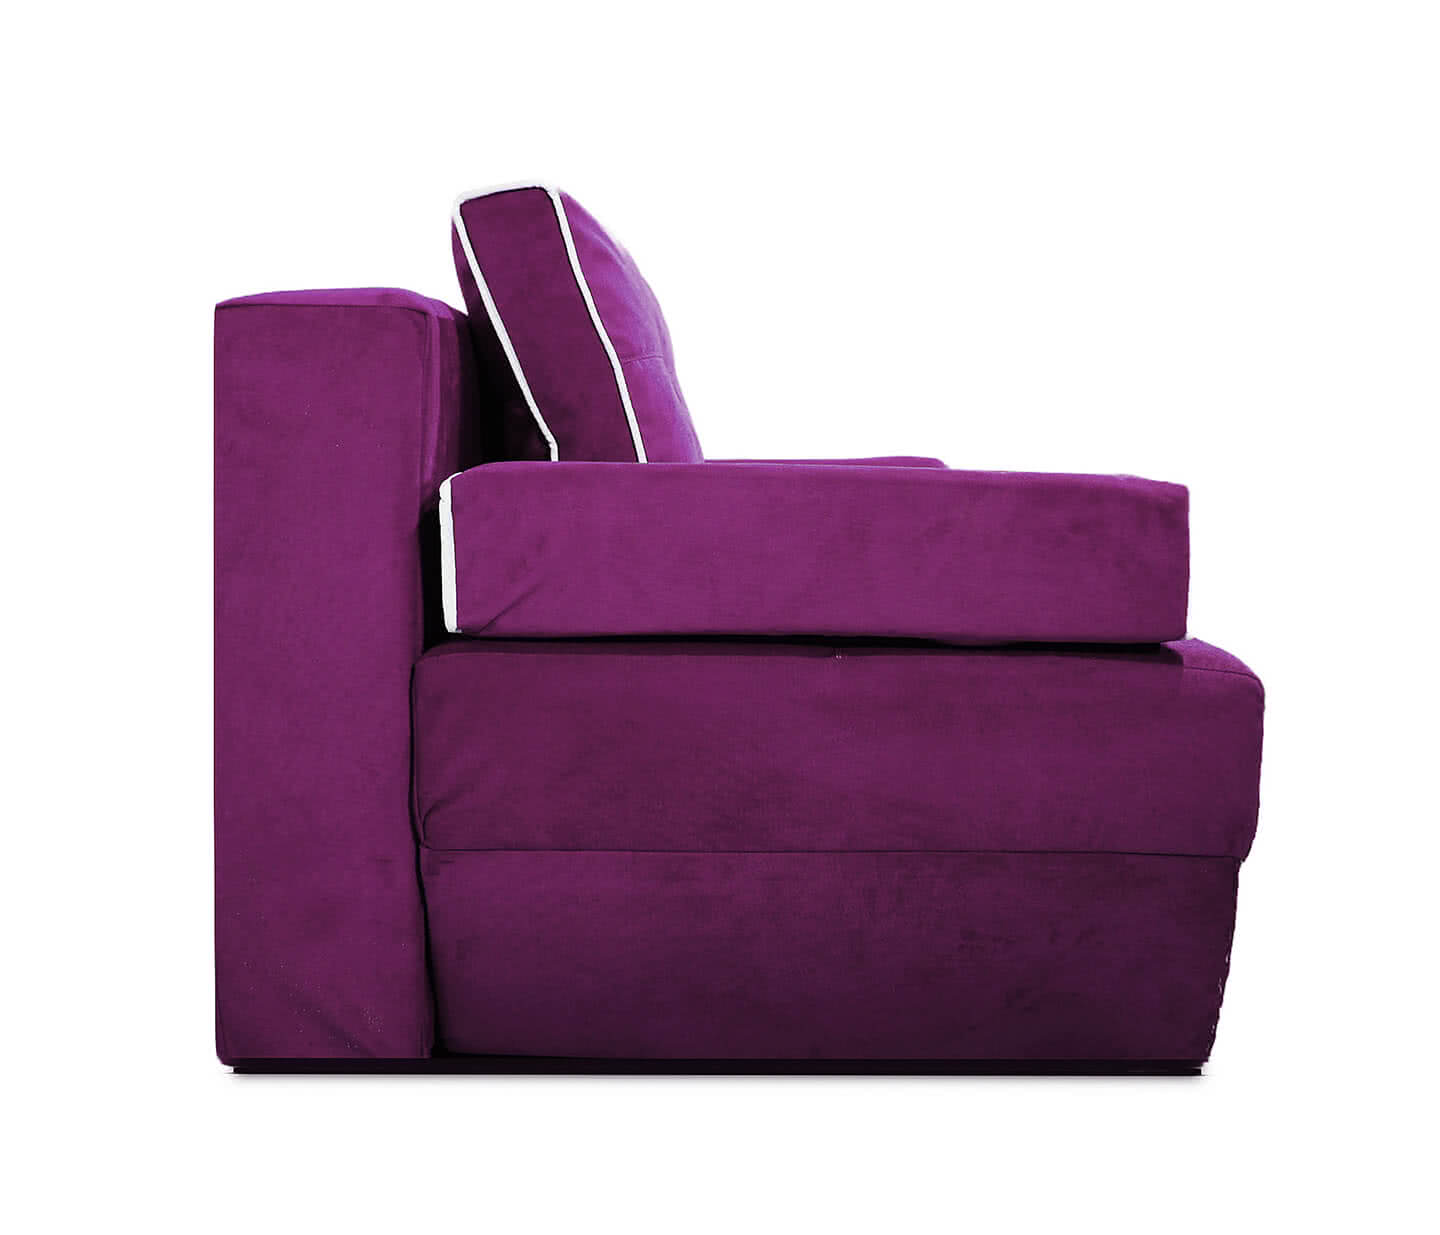 Диван Валенсия 150 х 195 см Фиолетовый от производителя — цены фабрики, доставка